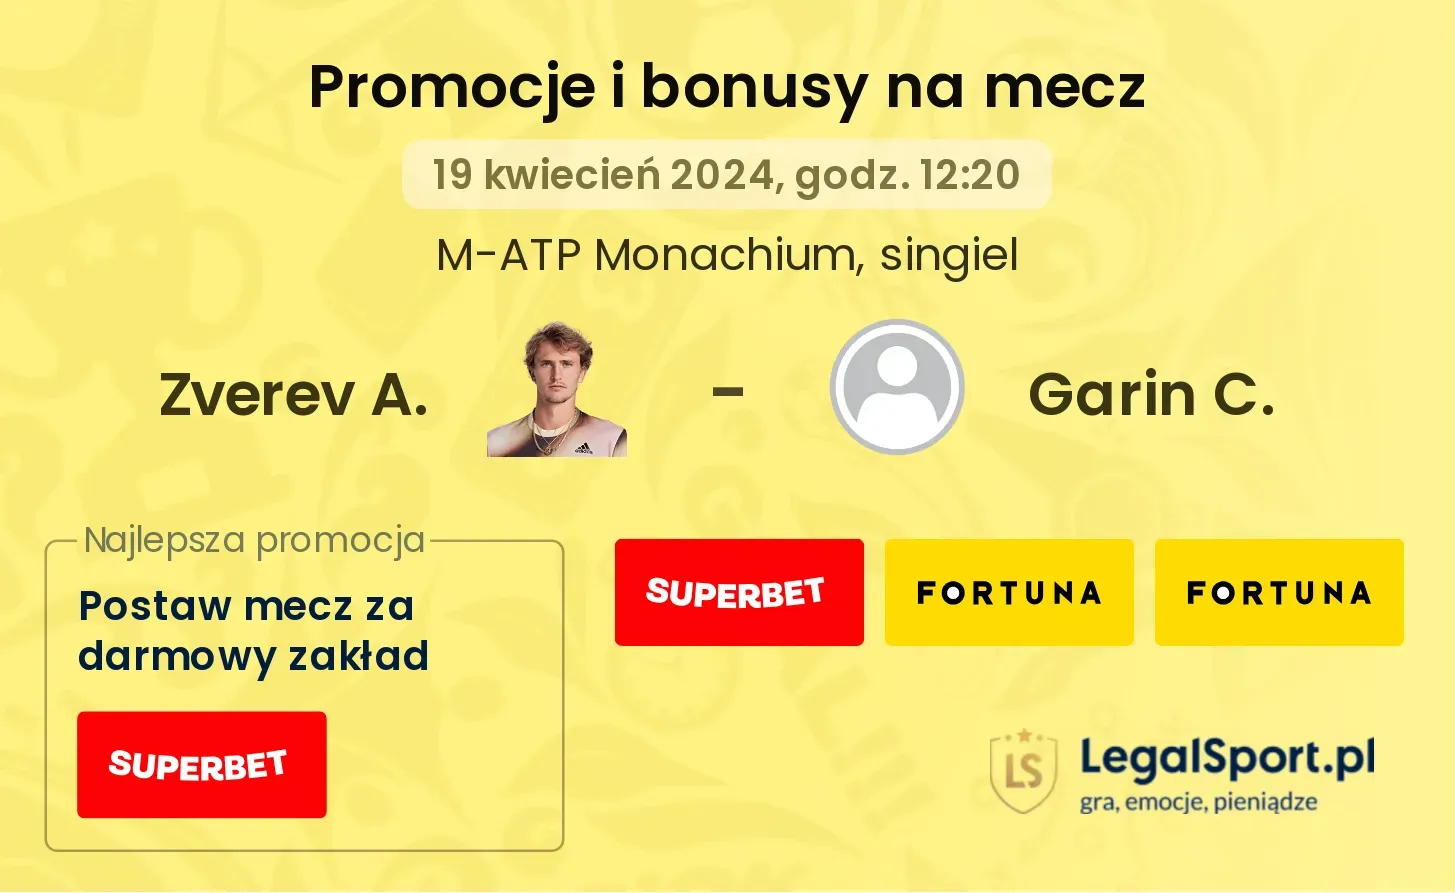 Zverev A. - Garin C. promocje bonusy na mecz